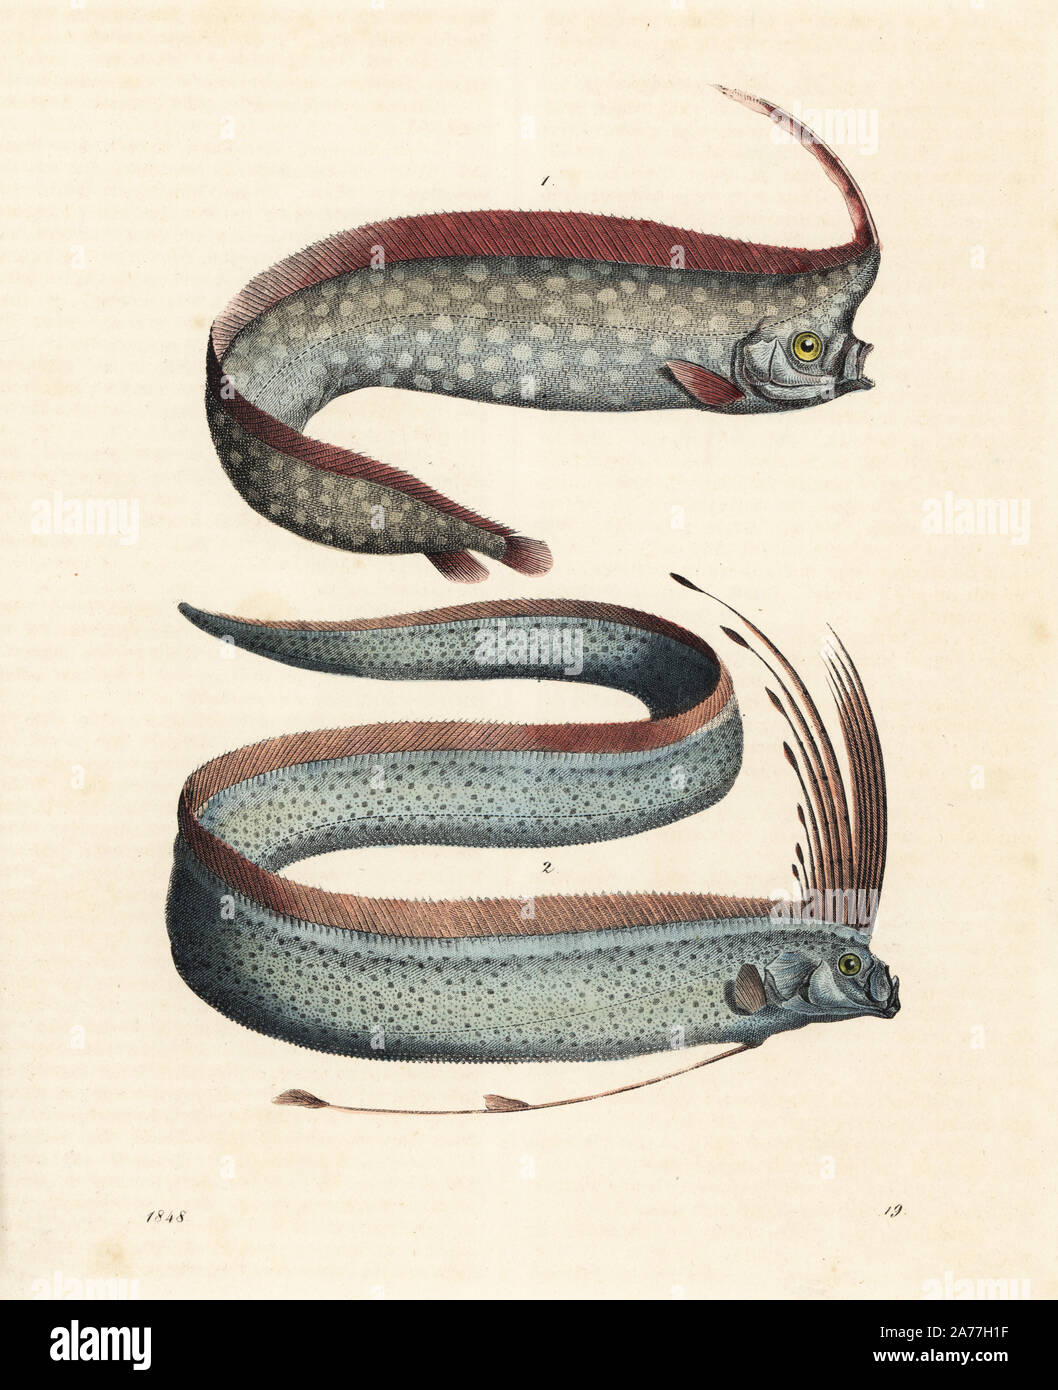 Crested oarfish, Lophotus lacepedei (Lophotes copedianus) und oarfish, Regalecus glesne (Gymnetrus gladius). Papierkörbe Lithographie von Carl Hoffmann's Buch der Welt, Stuttgart, 1848. Stockfoto